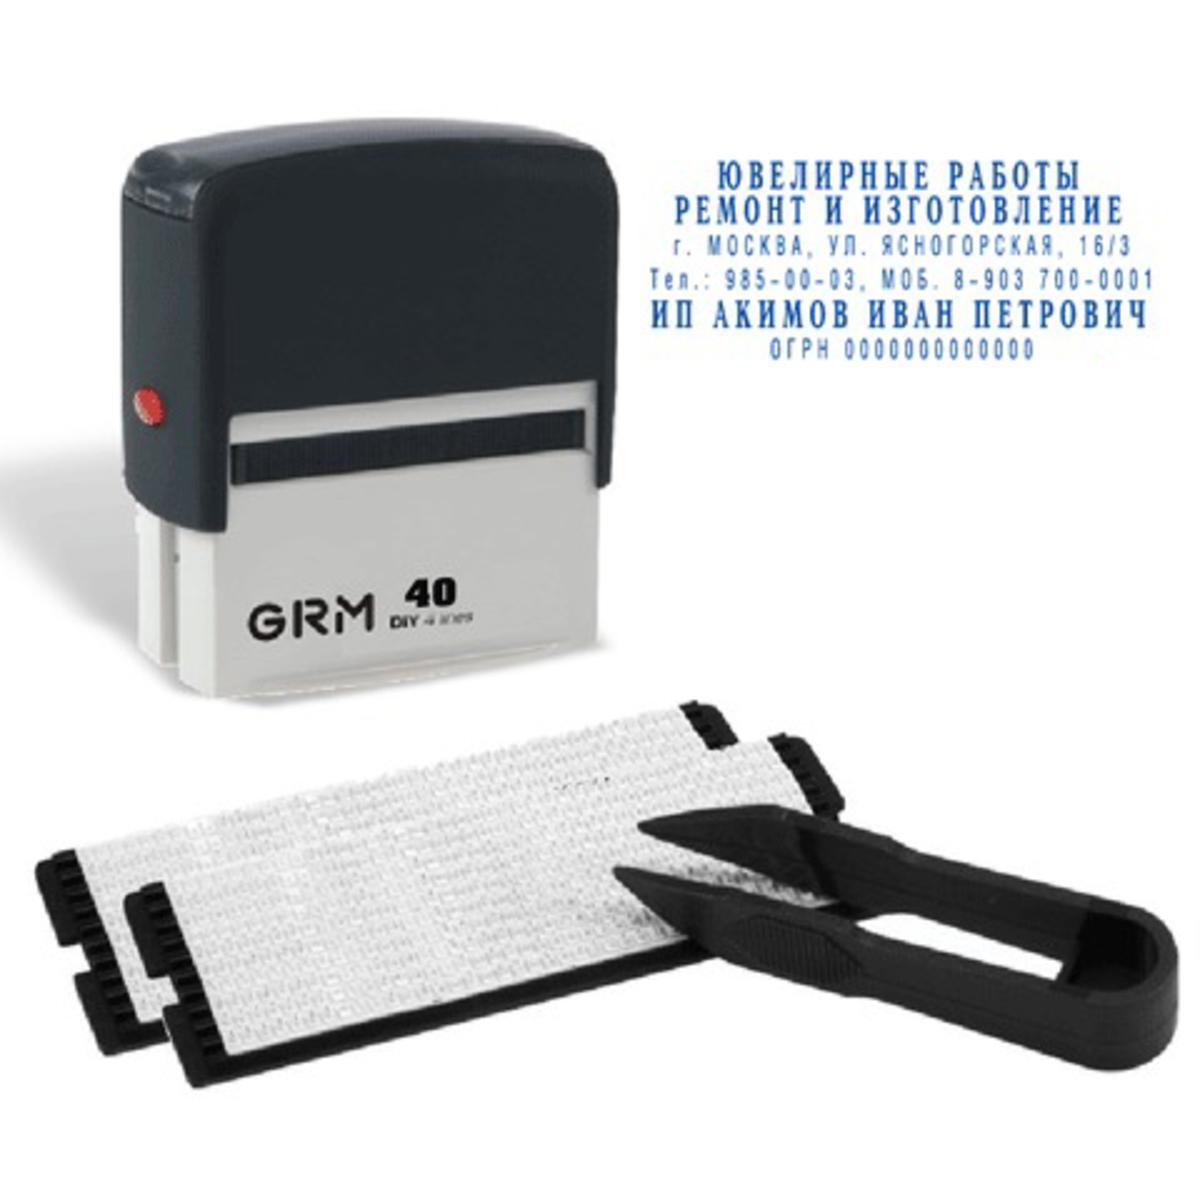 Где можно купить печать. Штамп самонаборный "GRM 30". Штамп самонаборный "GRM 20". Штамп самонаборный 5-строчный. Штамп самонаборный 5-стр. Grm30 (GRM 4912).